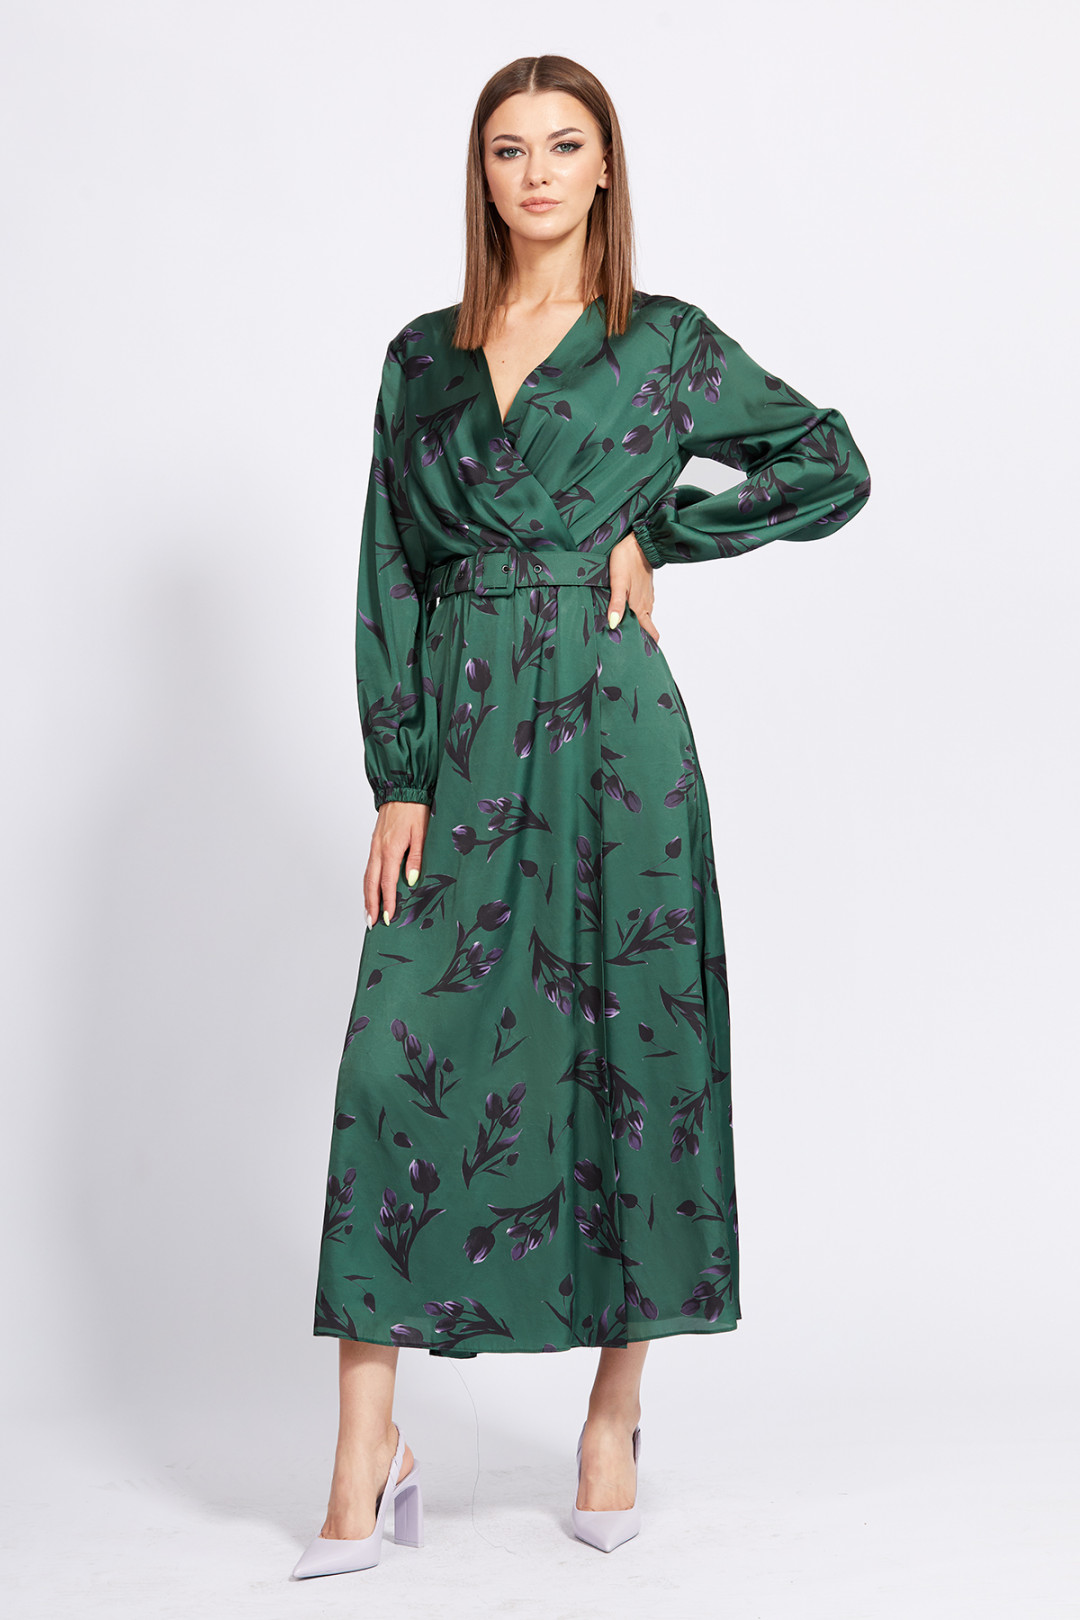 Платье Эола Стиль 2268 зеленый в цветы